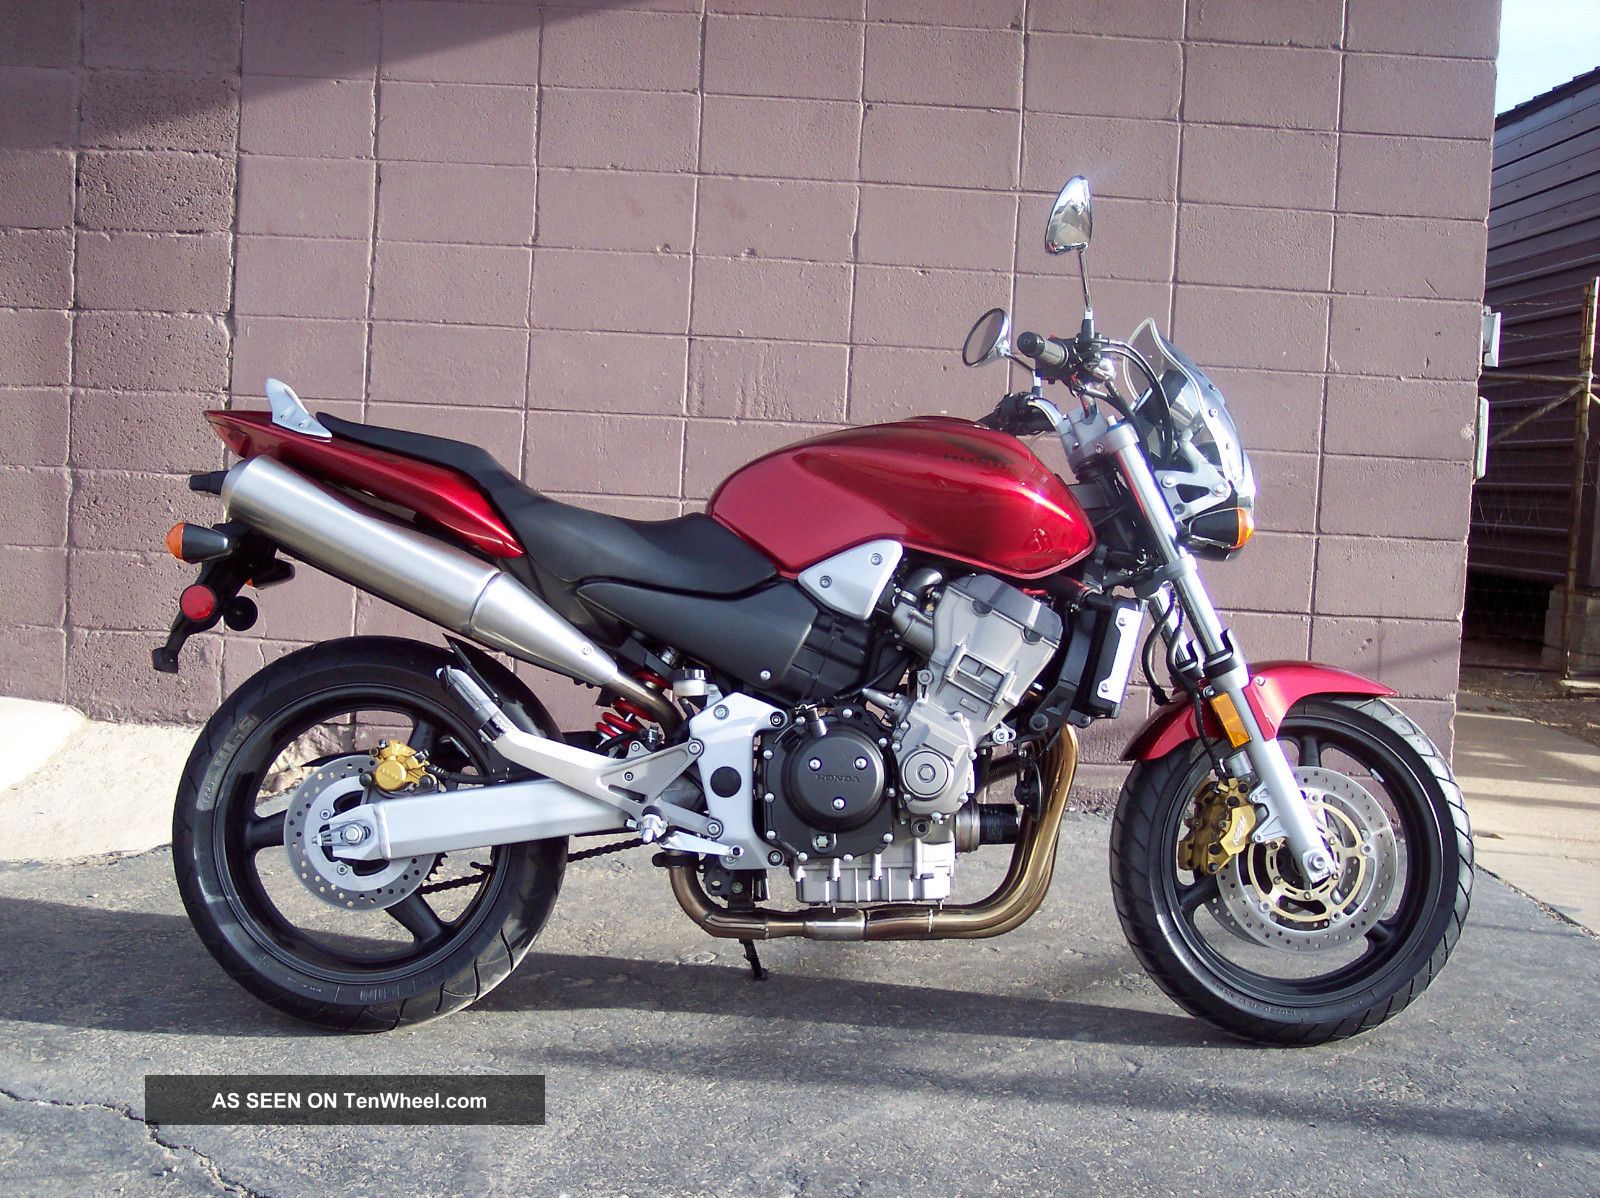 Heres a fairly uncommon Honda motorcycle: CB919 aka 